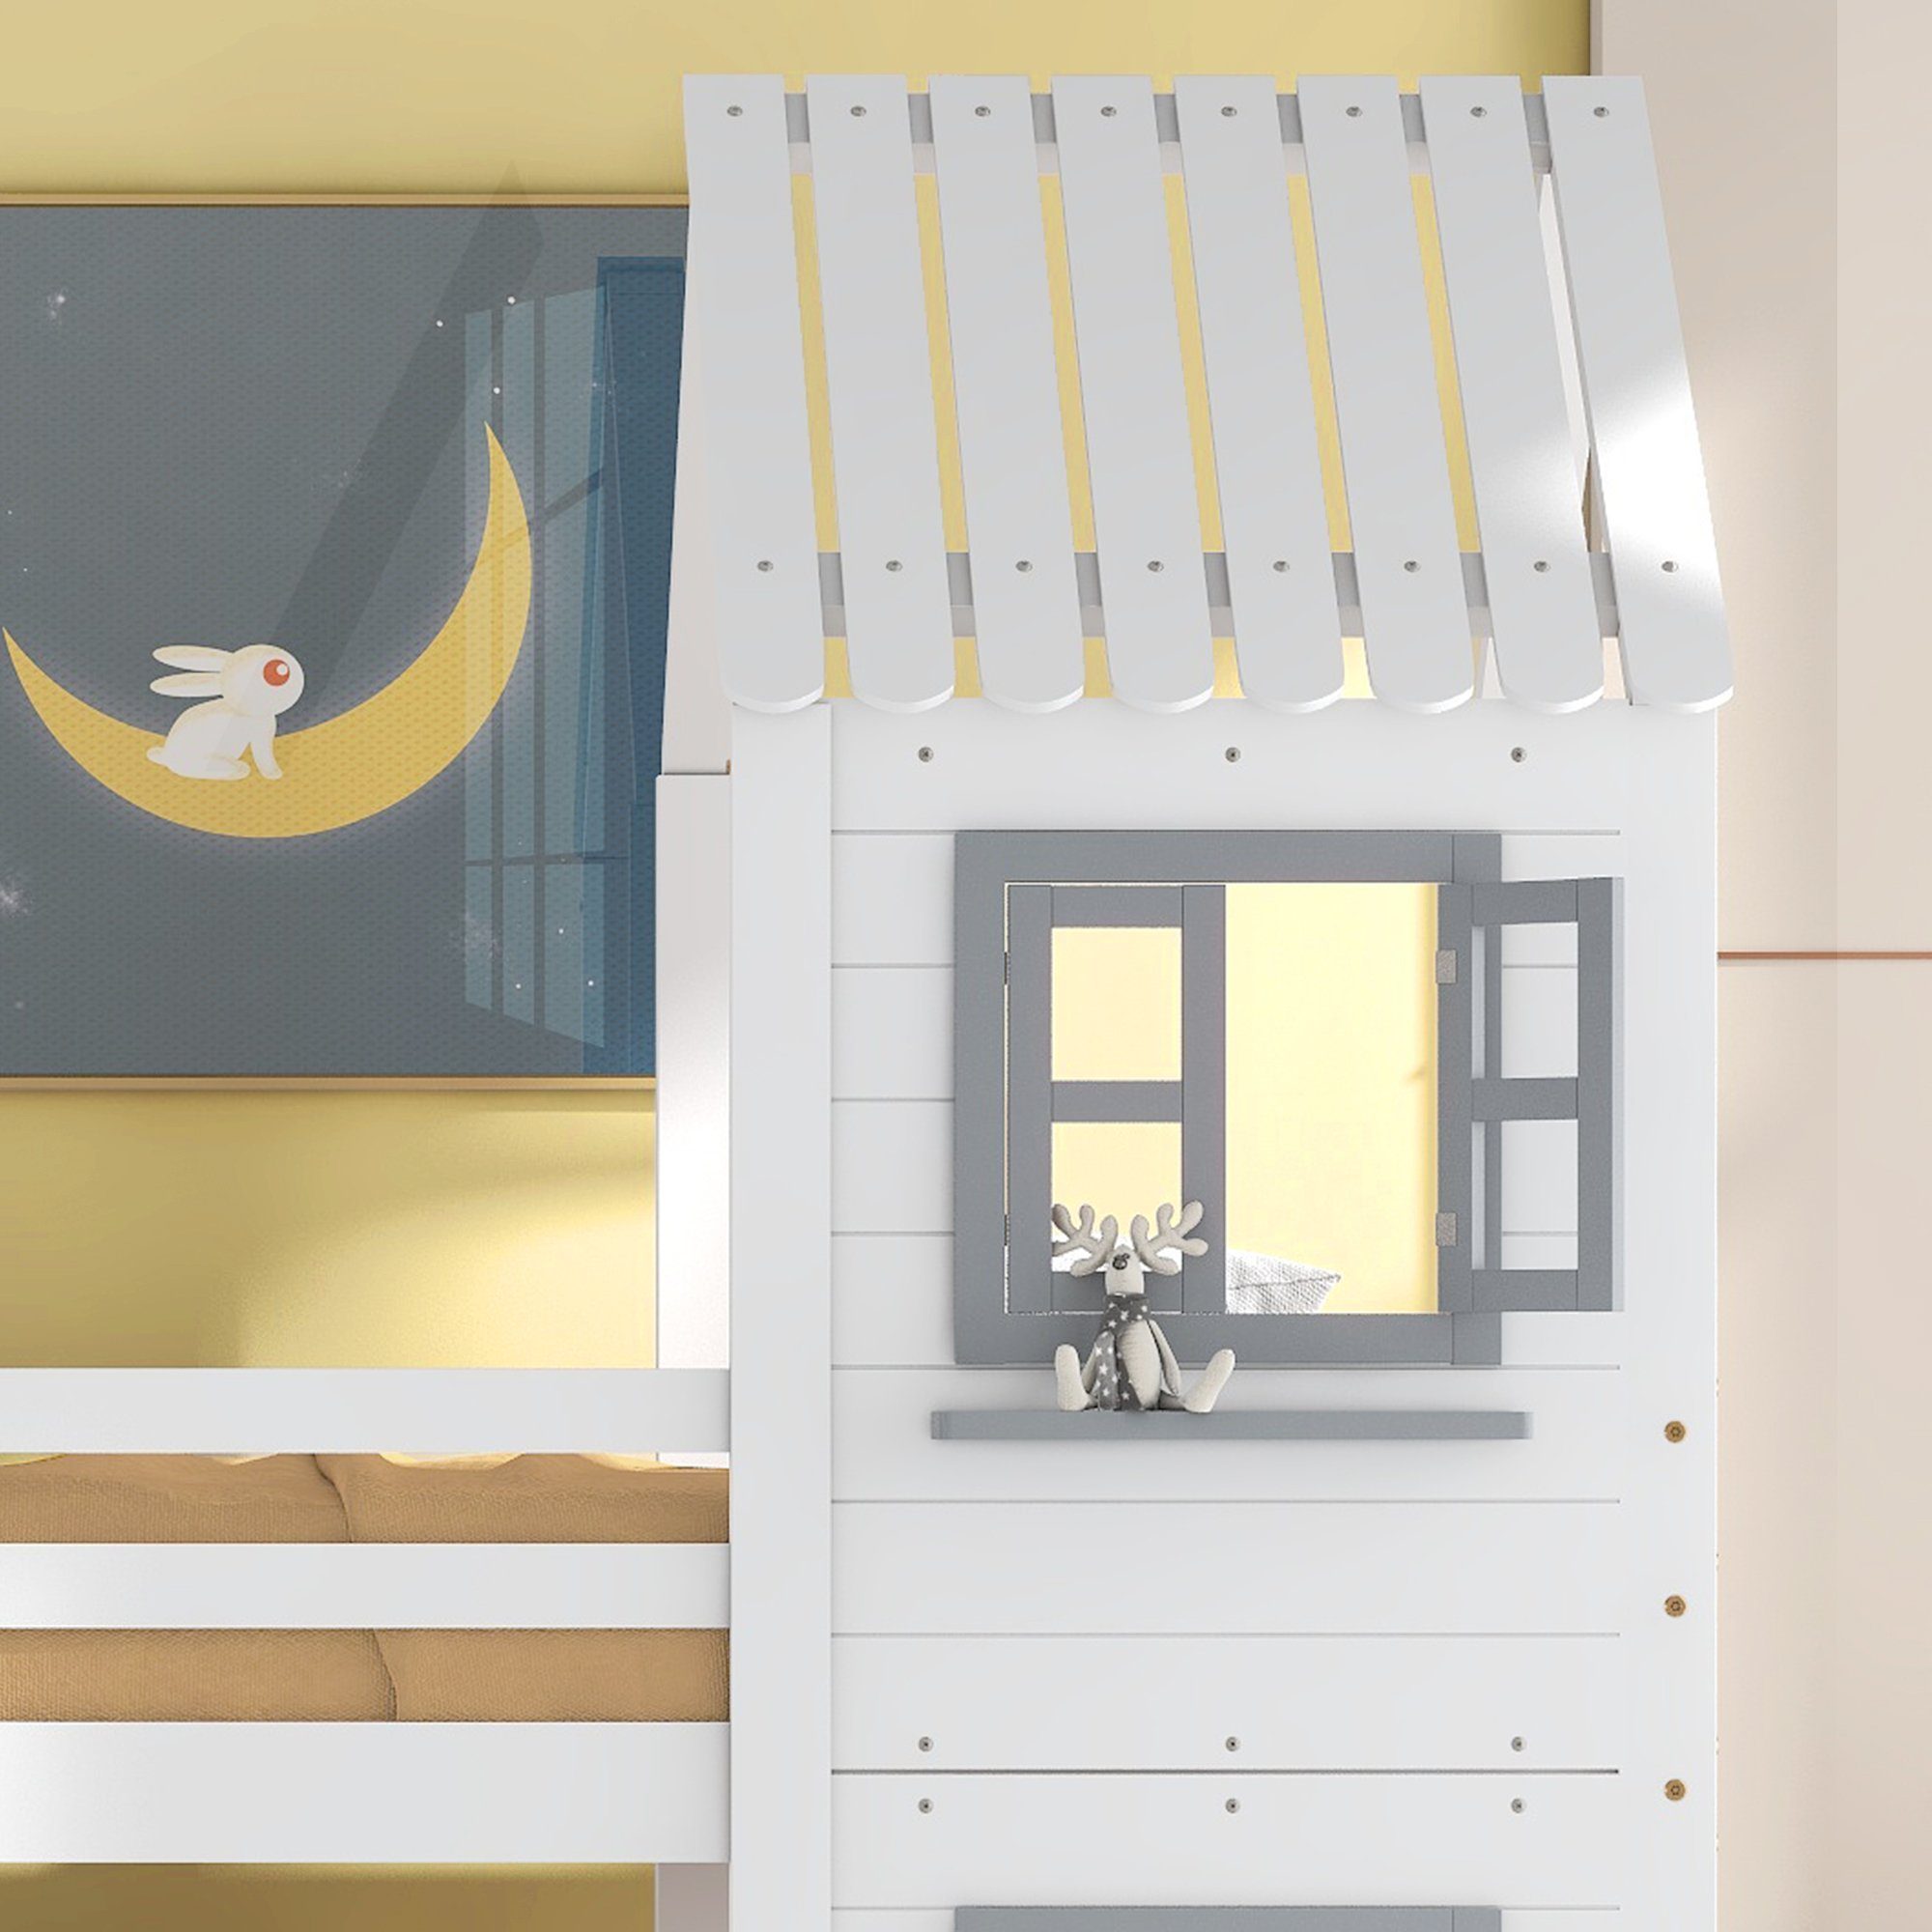 Rollrost (90x200 und Etagenbett inkl. mit SOFTWEARY Schlafgelegenheiten, Kinderbett mit cm), 2 Rausfallschutz, Kiefer Treppe